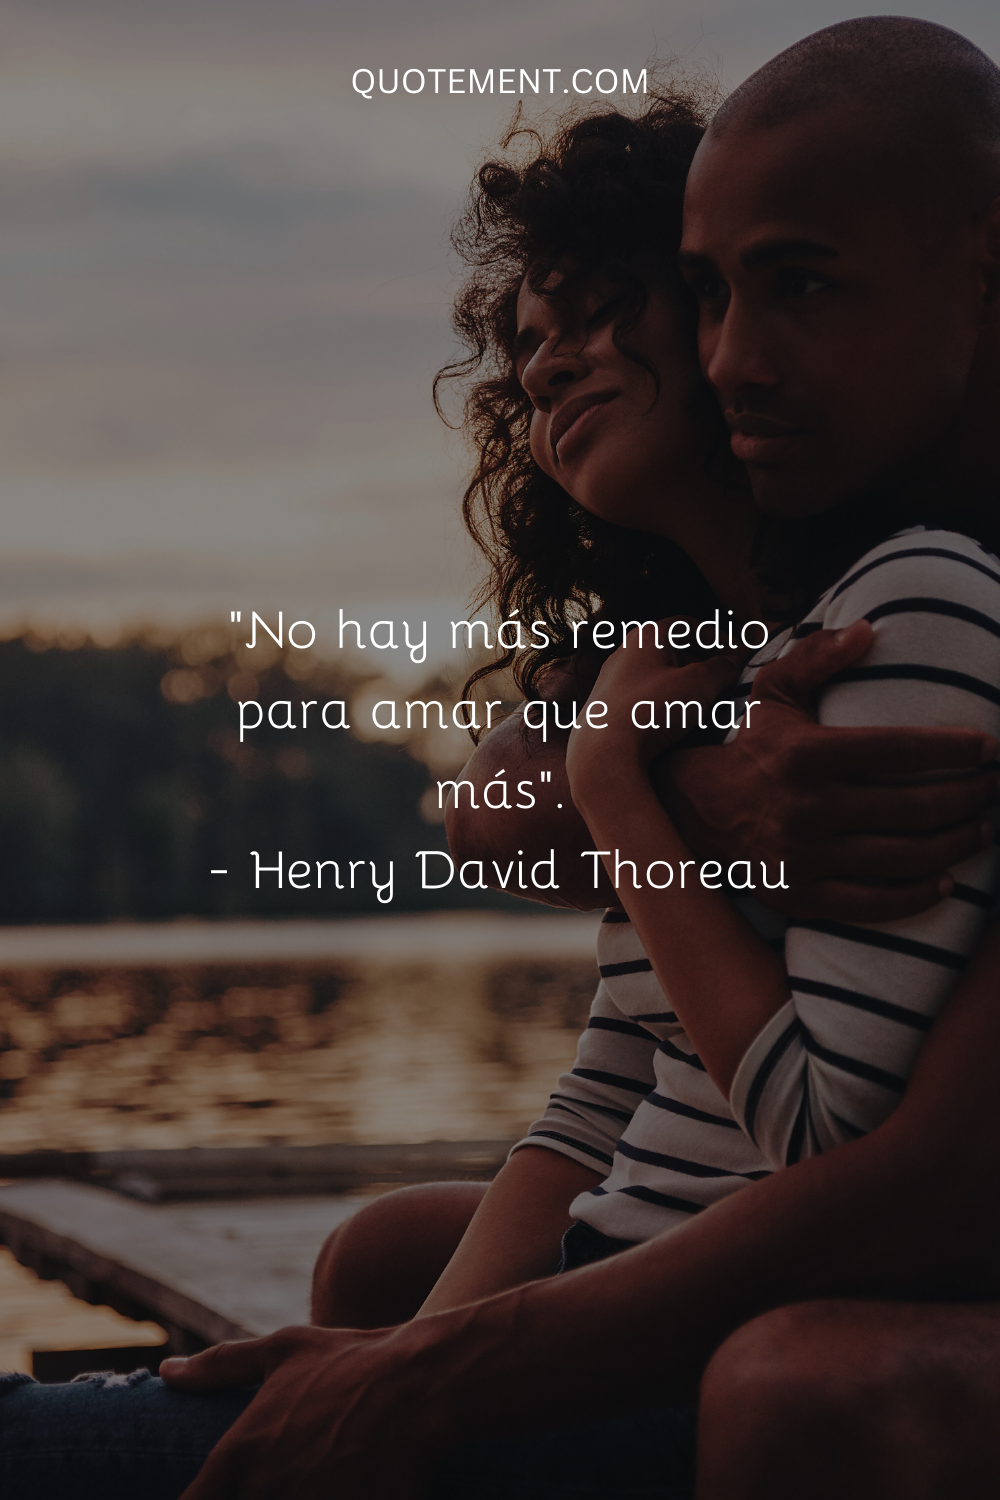 "No hay más remedio para el amor que amar más". - Henry David Thoreau